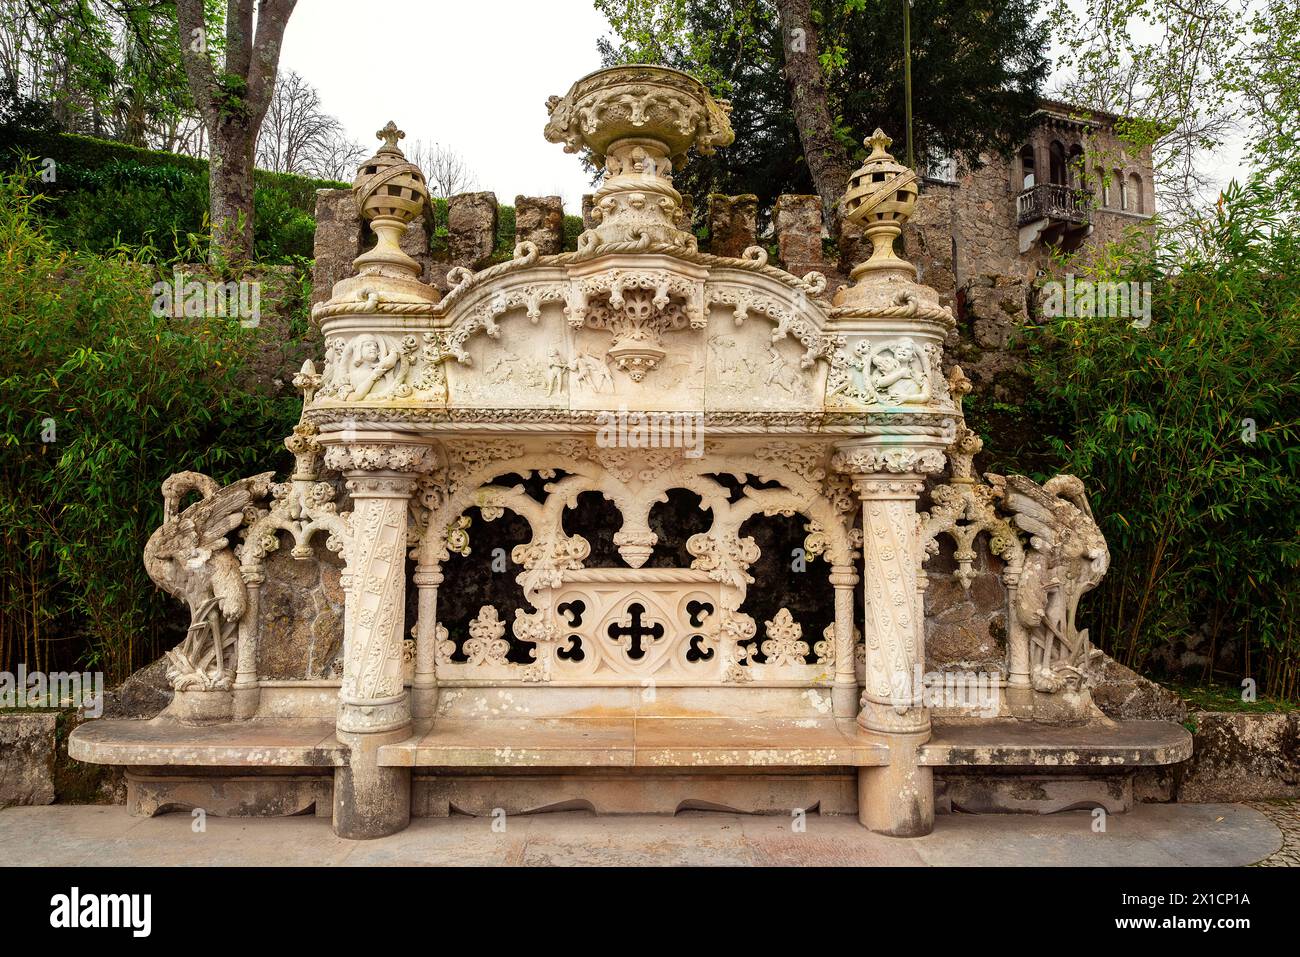 Dekorative Bank zwischen dem Palast und der Kapelle, Quinta da Regaleira Park, Sintra, Portugal Stockfoto